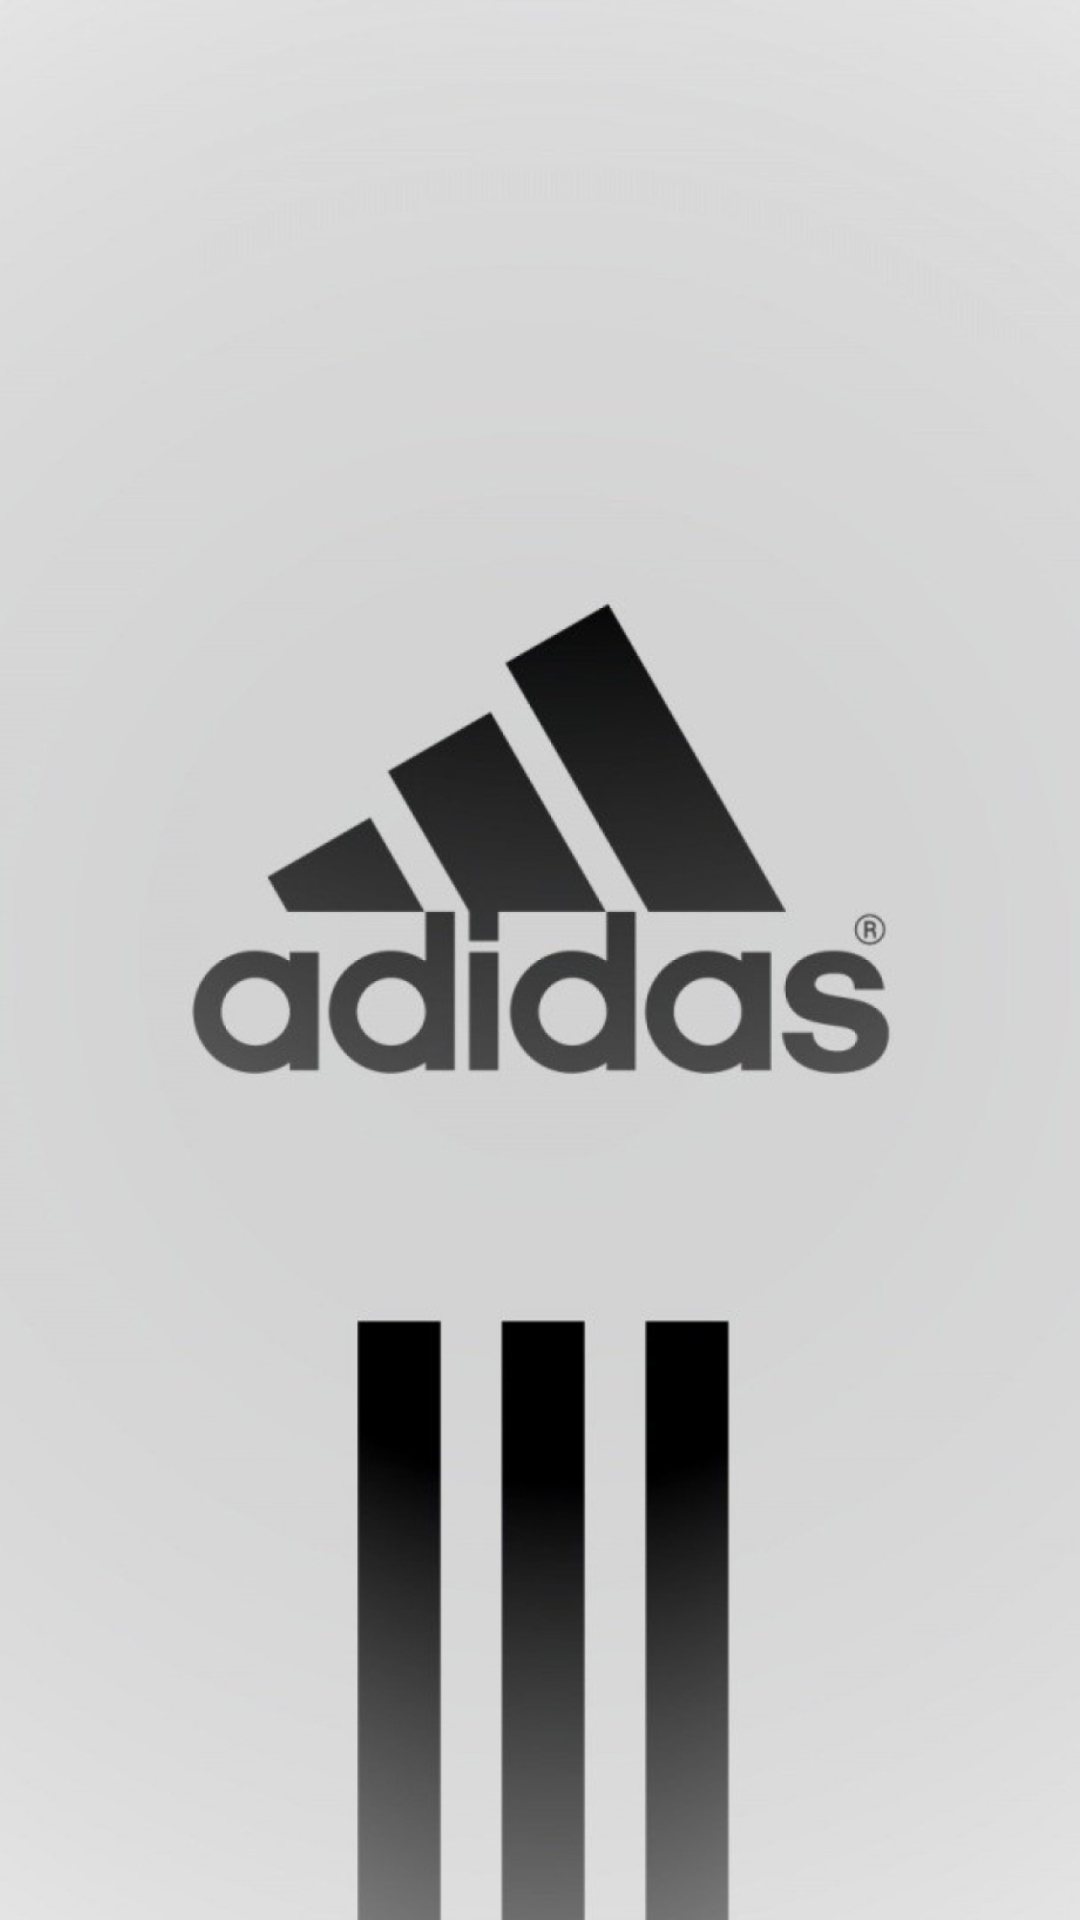 Das Adidas Logo Wallpaper 1080x1920